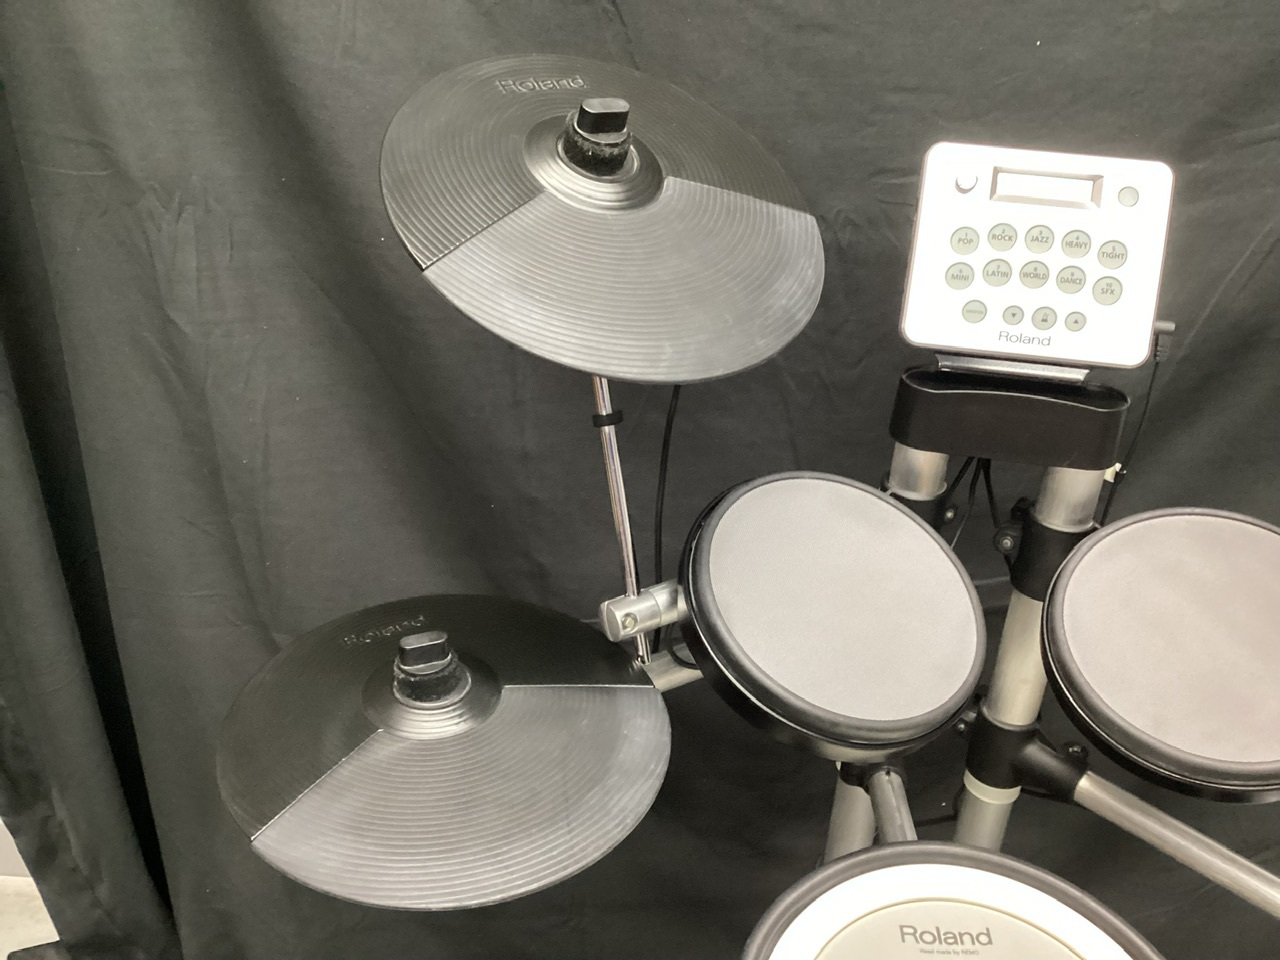 Roland HD-3 (ローランド 電子ドラム V-Drums コンパクト 省スペース 